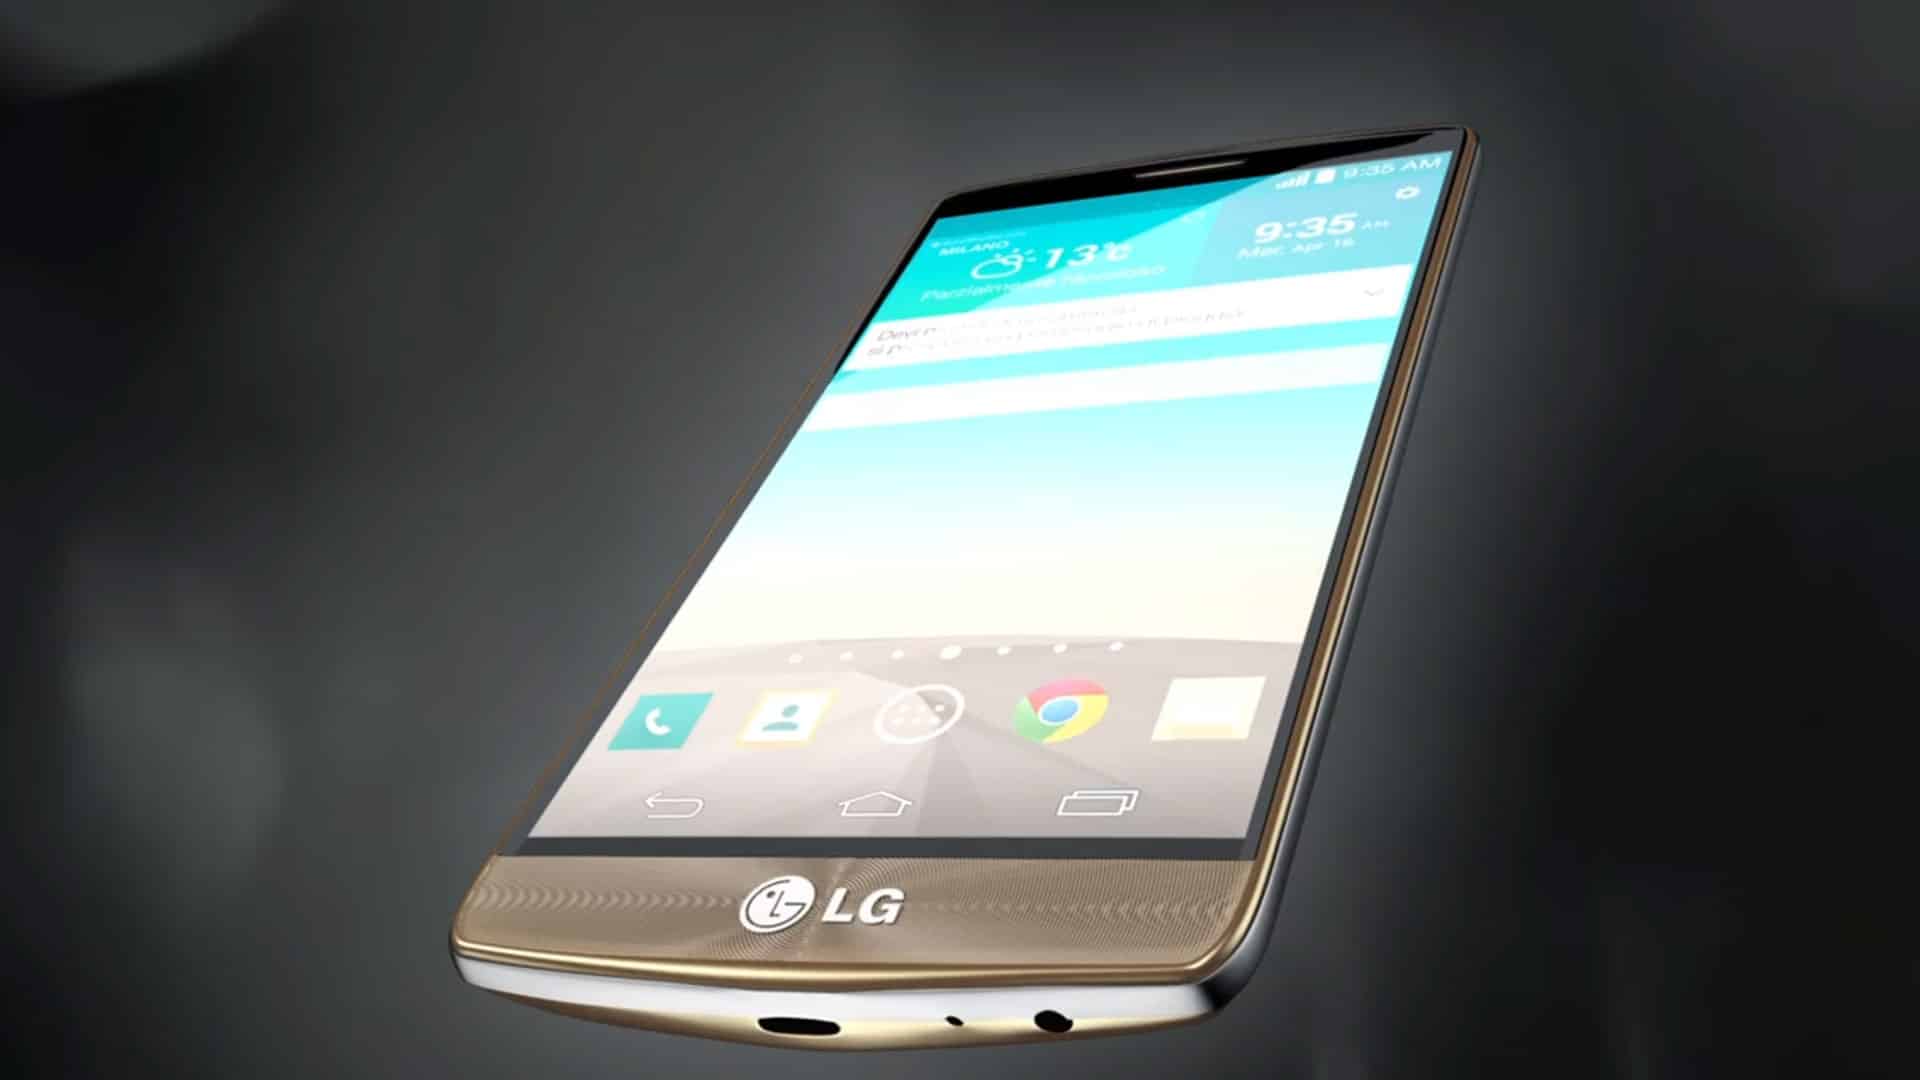 Presentazione LG G3 - Video 3D - Video promozionale realizzato per presentare il nuovo LG G3. Anno di produzione: 2015